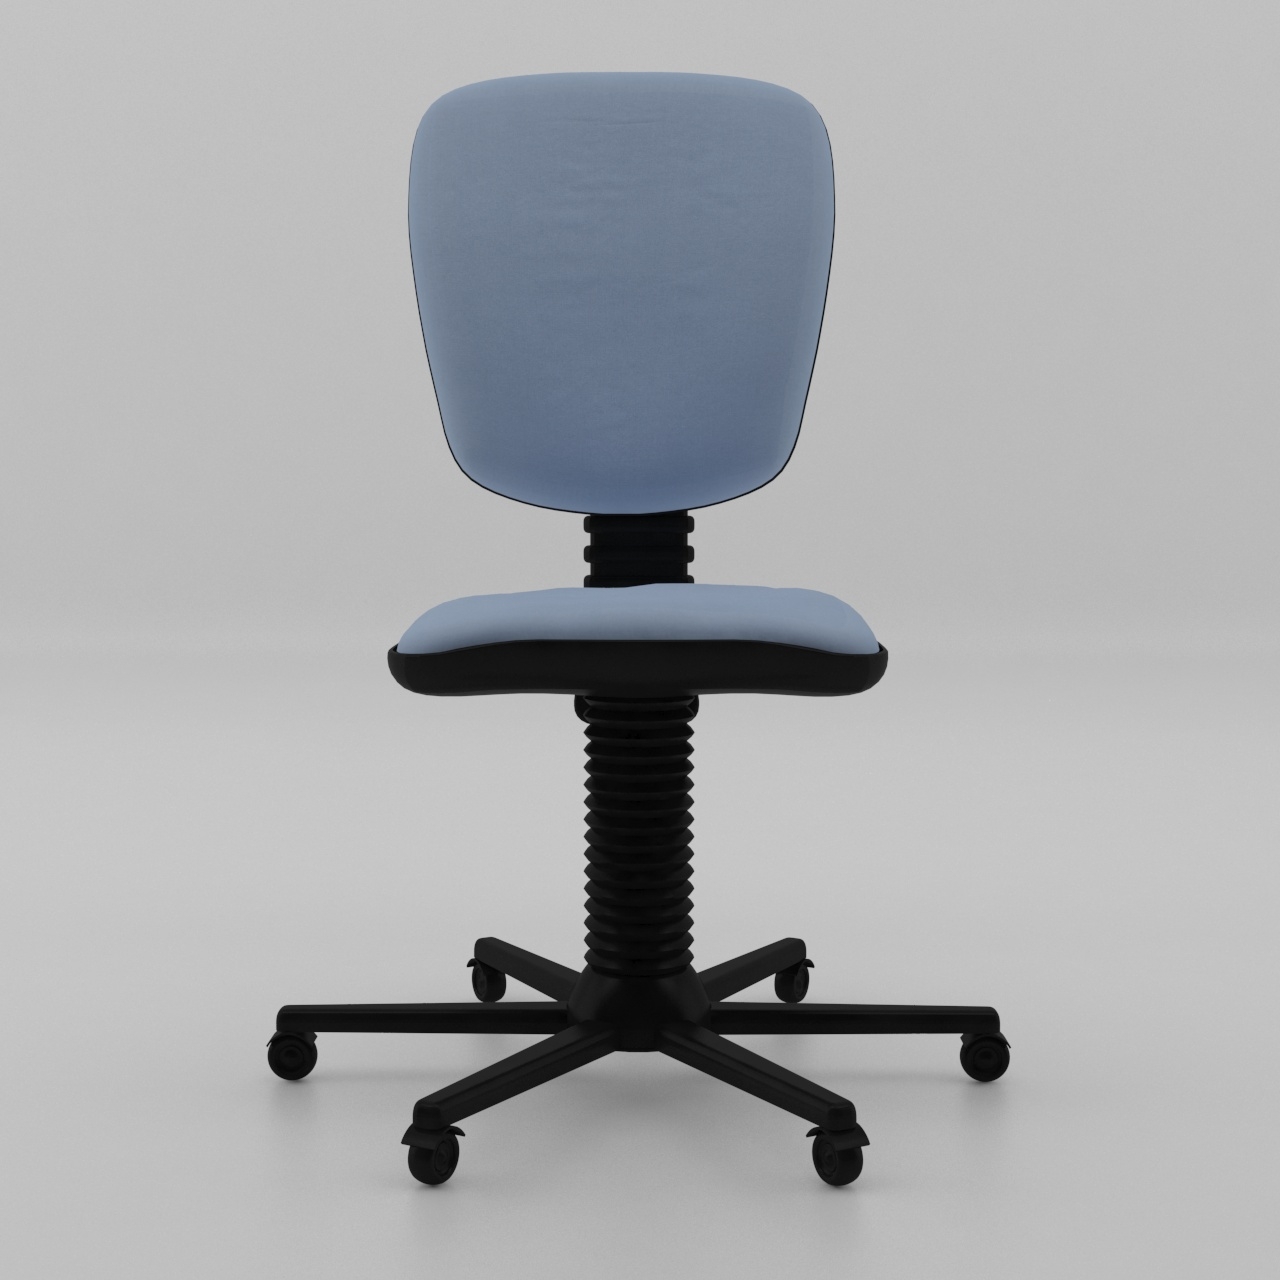 Компьютерное кресло 3D модель скачать бесплатно на CGBandit в формате 3d max,3ds, obj, fbx, материалы Vray, Corona Render